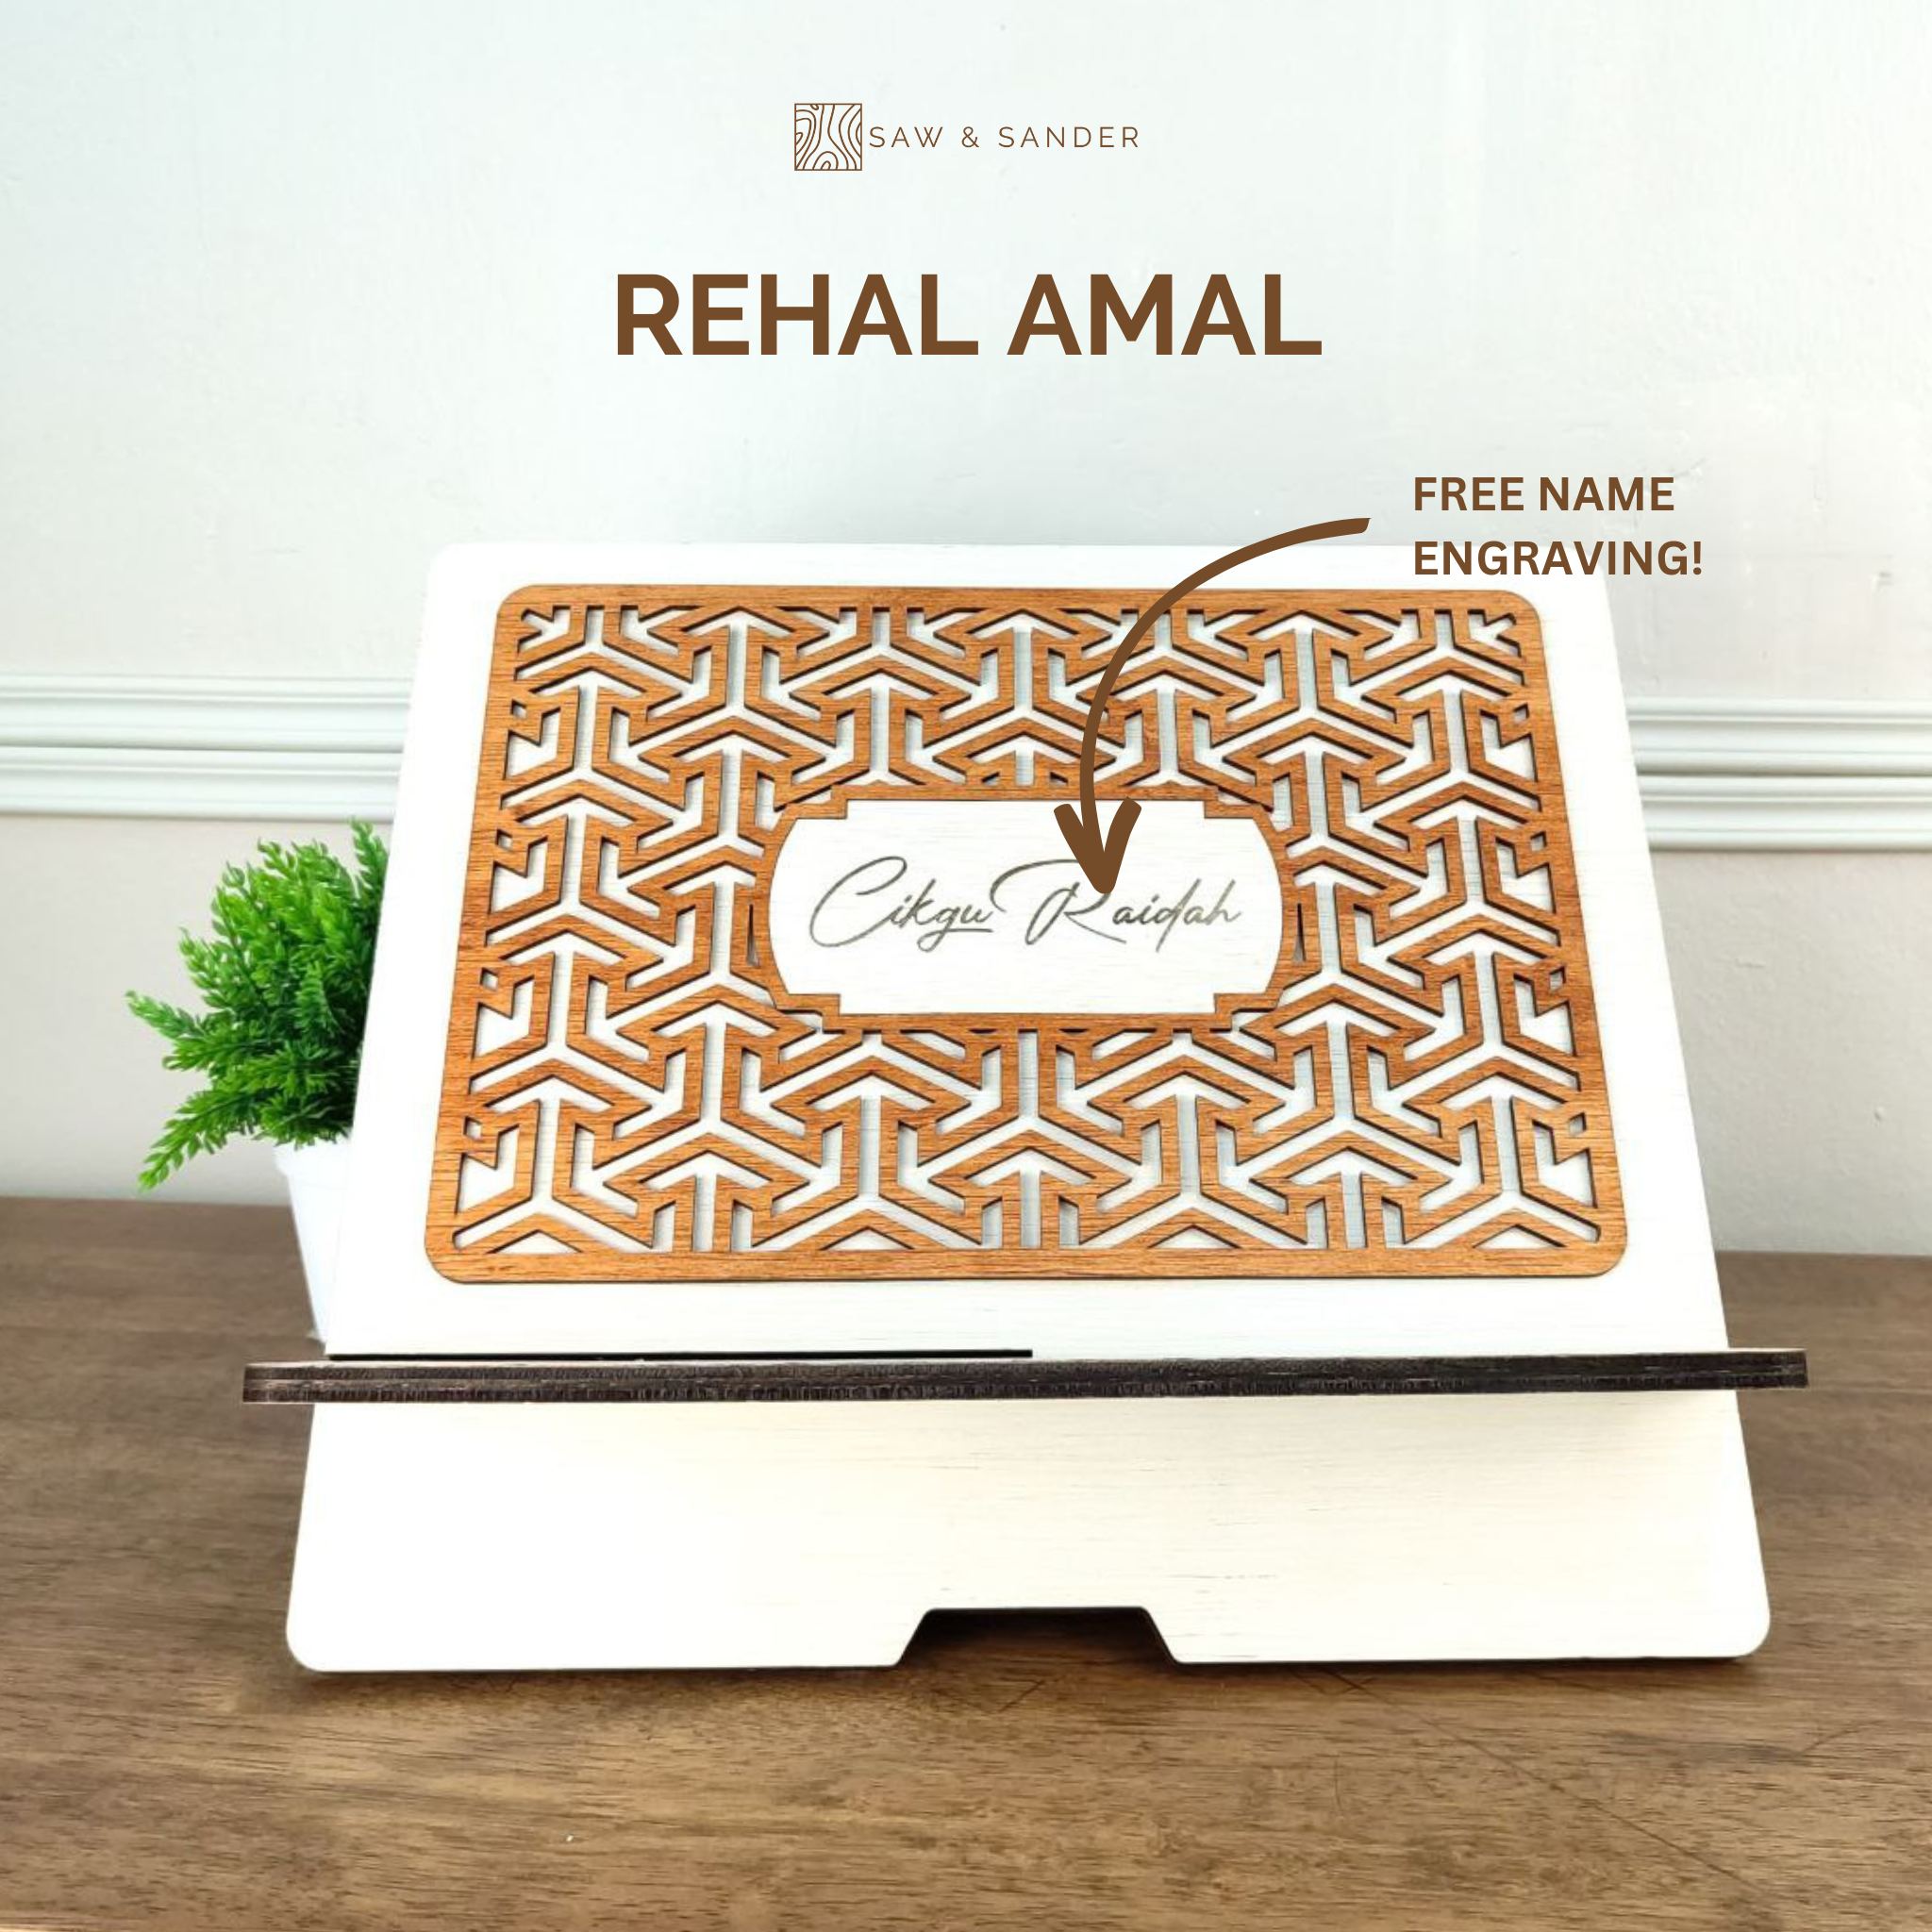 Rehal Amal Engrave